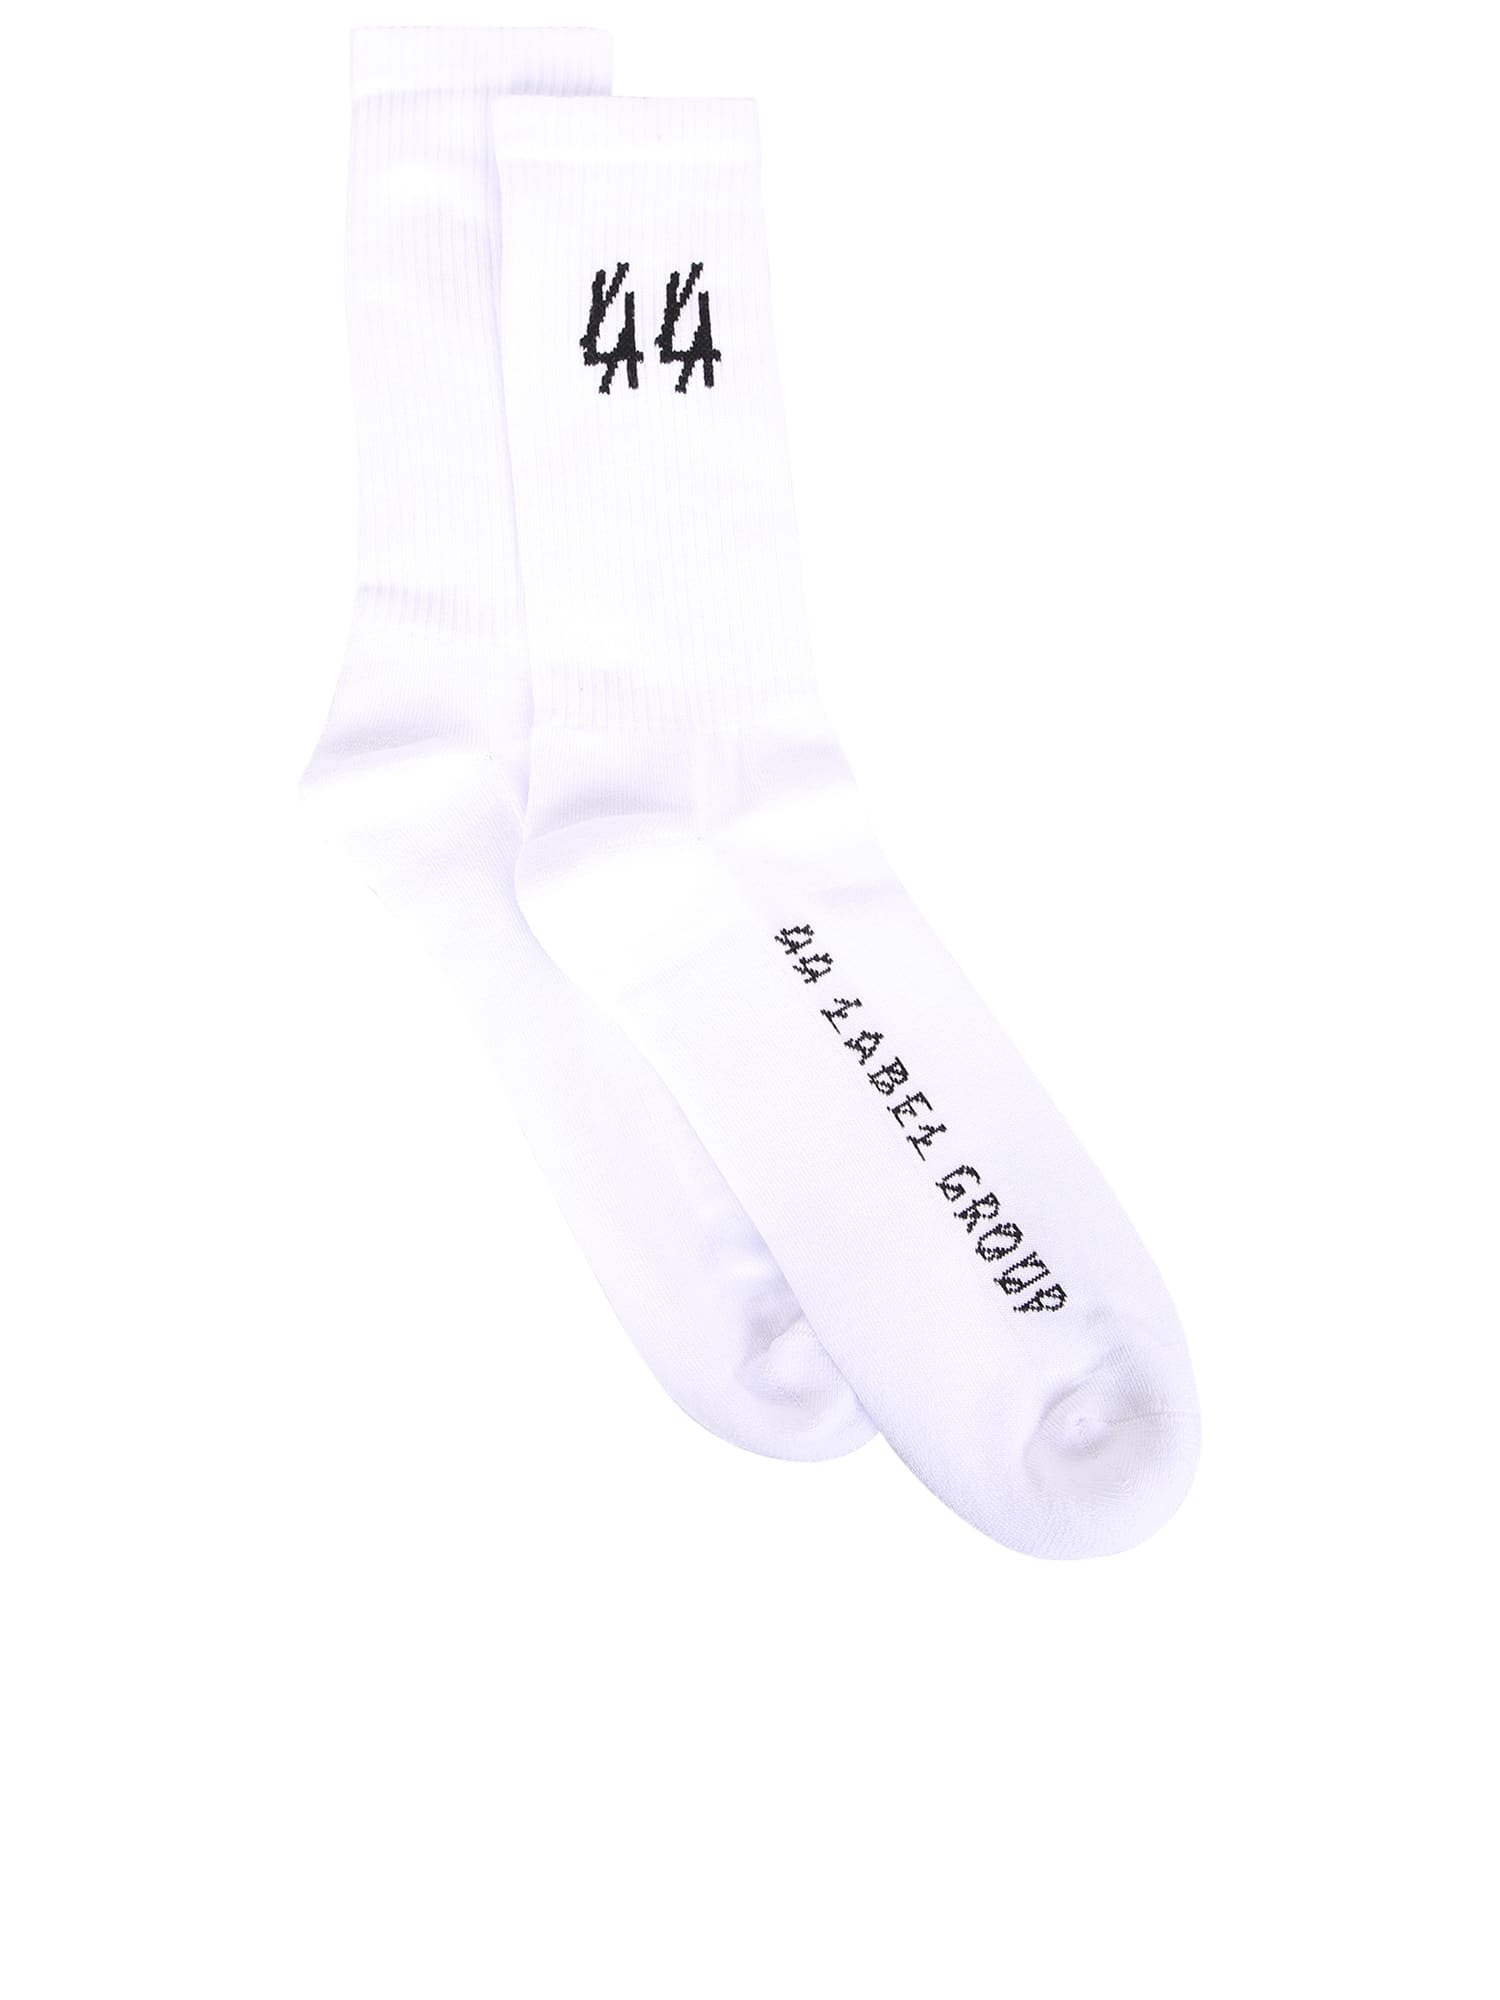 44 Label Group Socks White/ Black